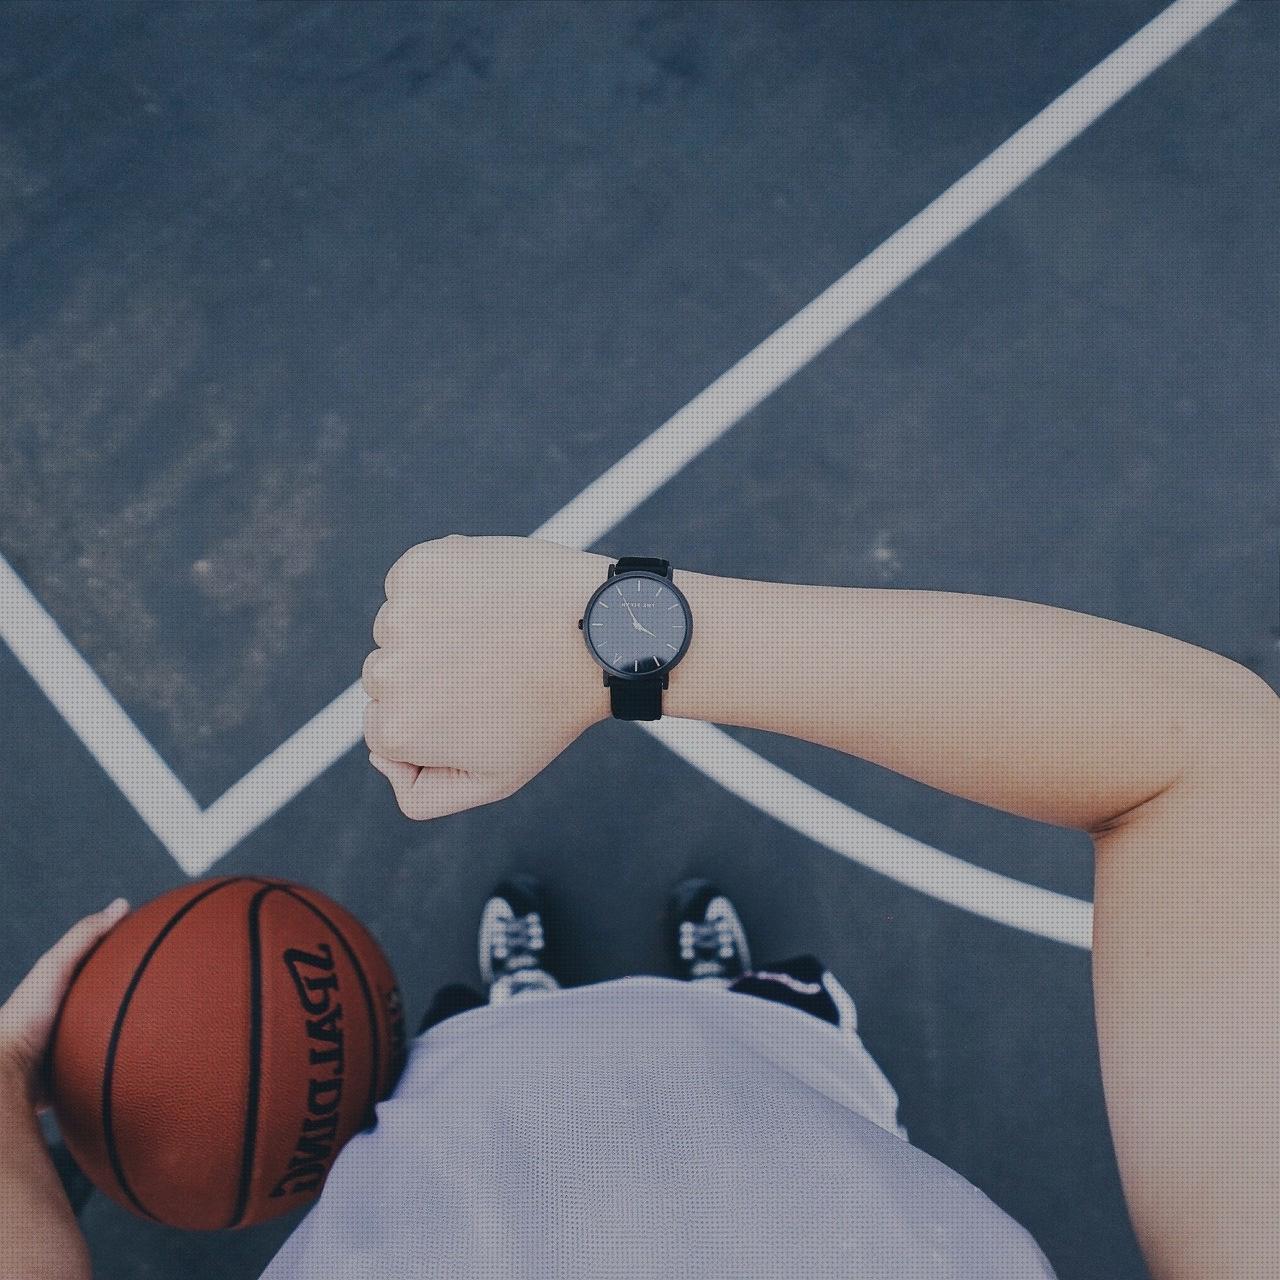 Las mejores marcas de relojes deportivos relojes relojes deportivos online